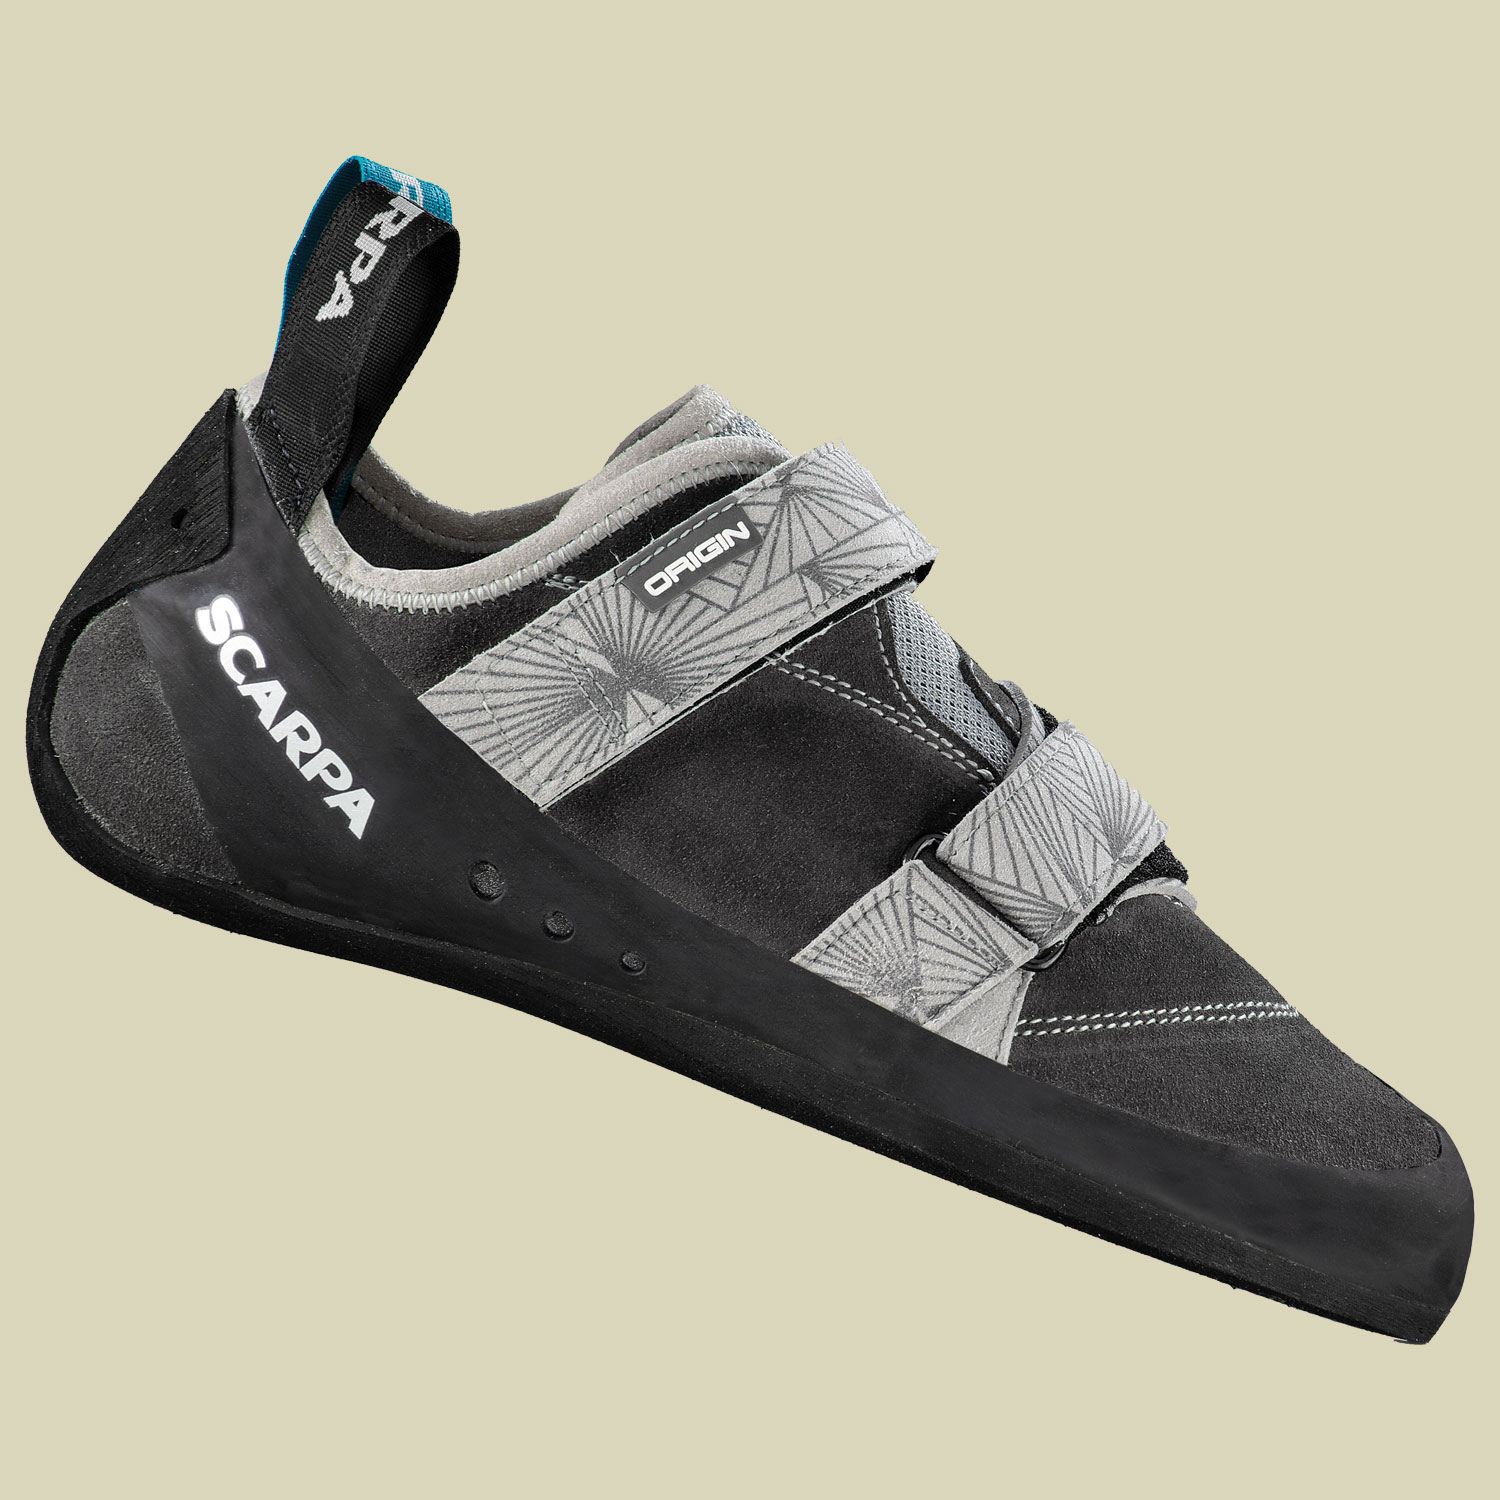 Origin covey/black 47 von Scarpa Schuhe